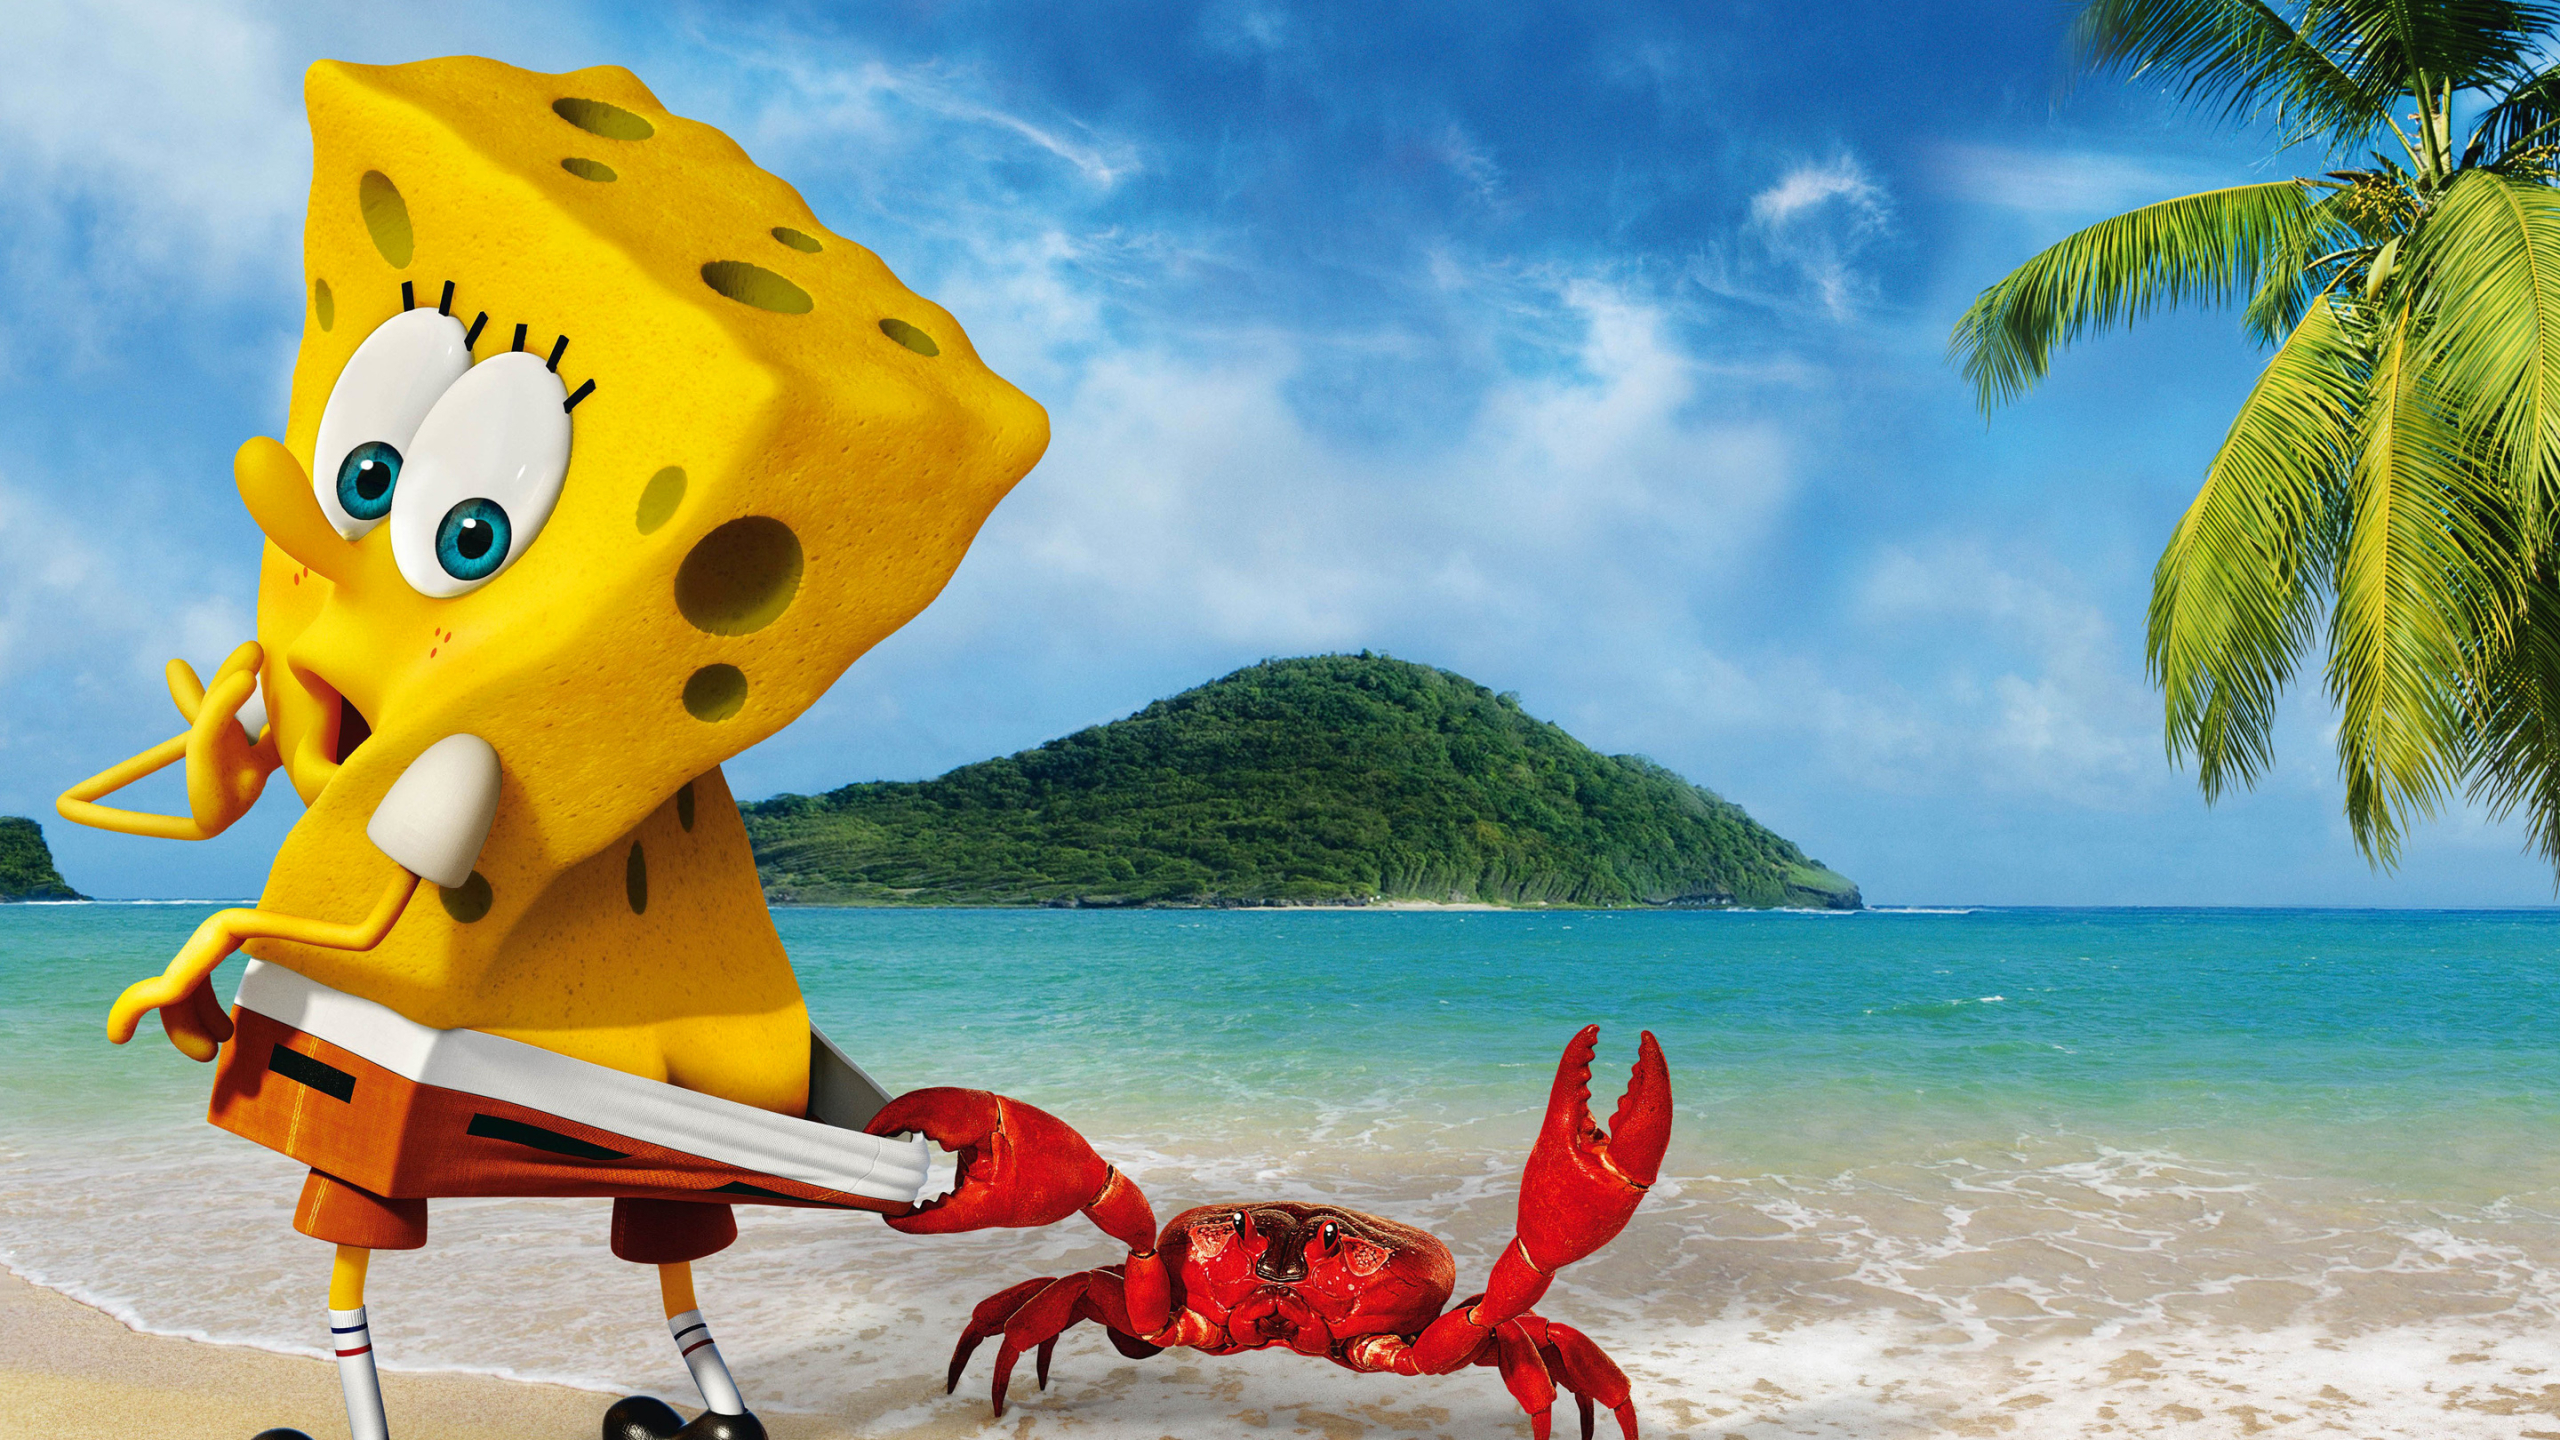 2560x1440 SpongeBob Crab Funny 1440P Resolution Wallpaper ...